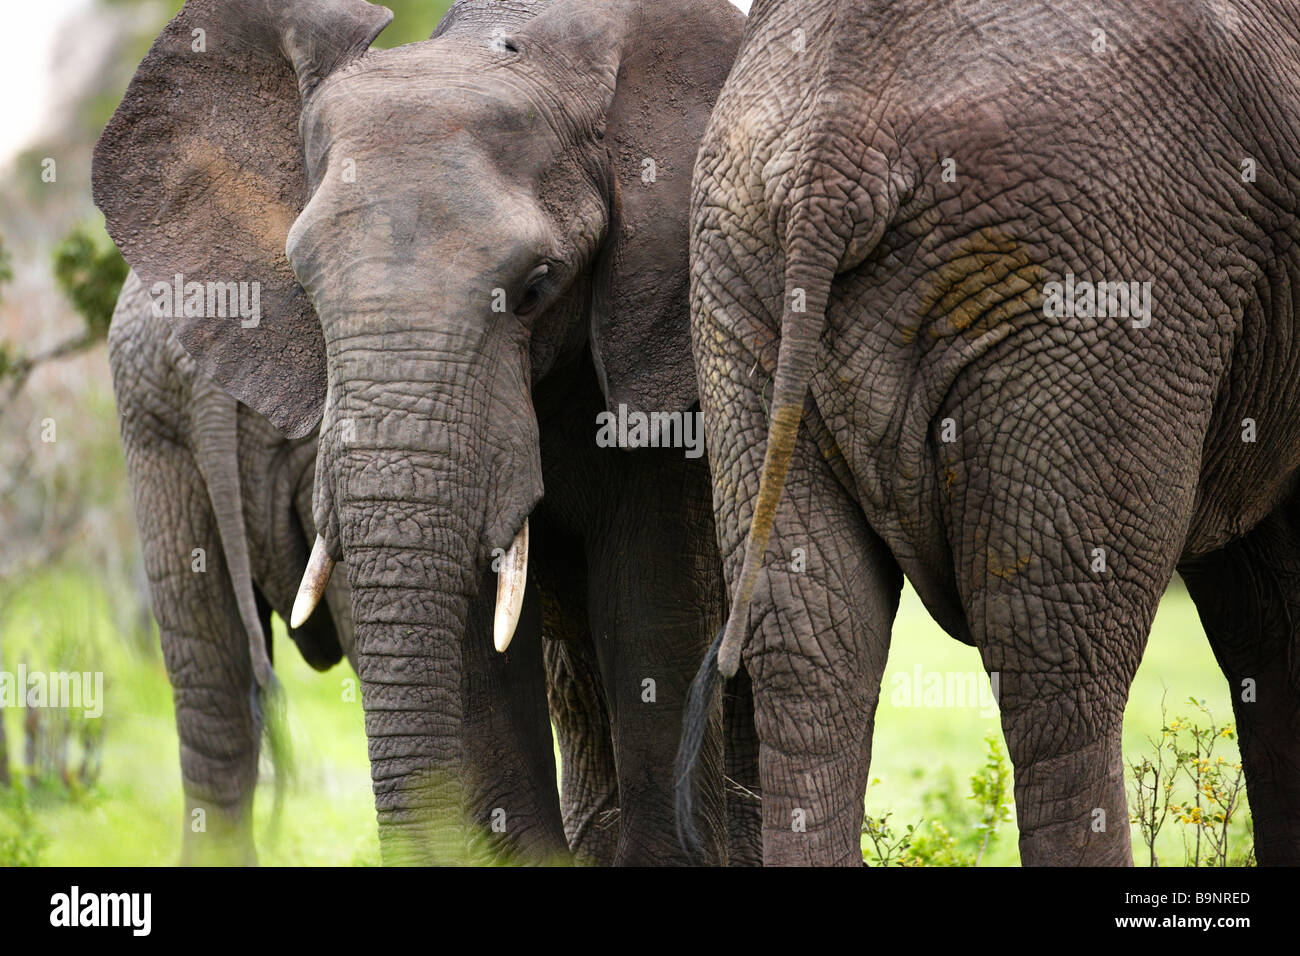 Vue frontale et arrière de l'éléphant dans la brousse, Kruger National Park, Afrique du Sud Banque D'Images